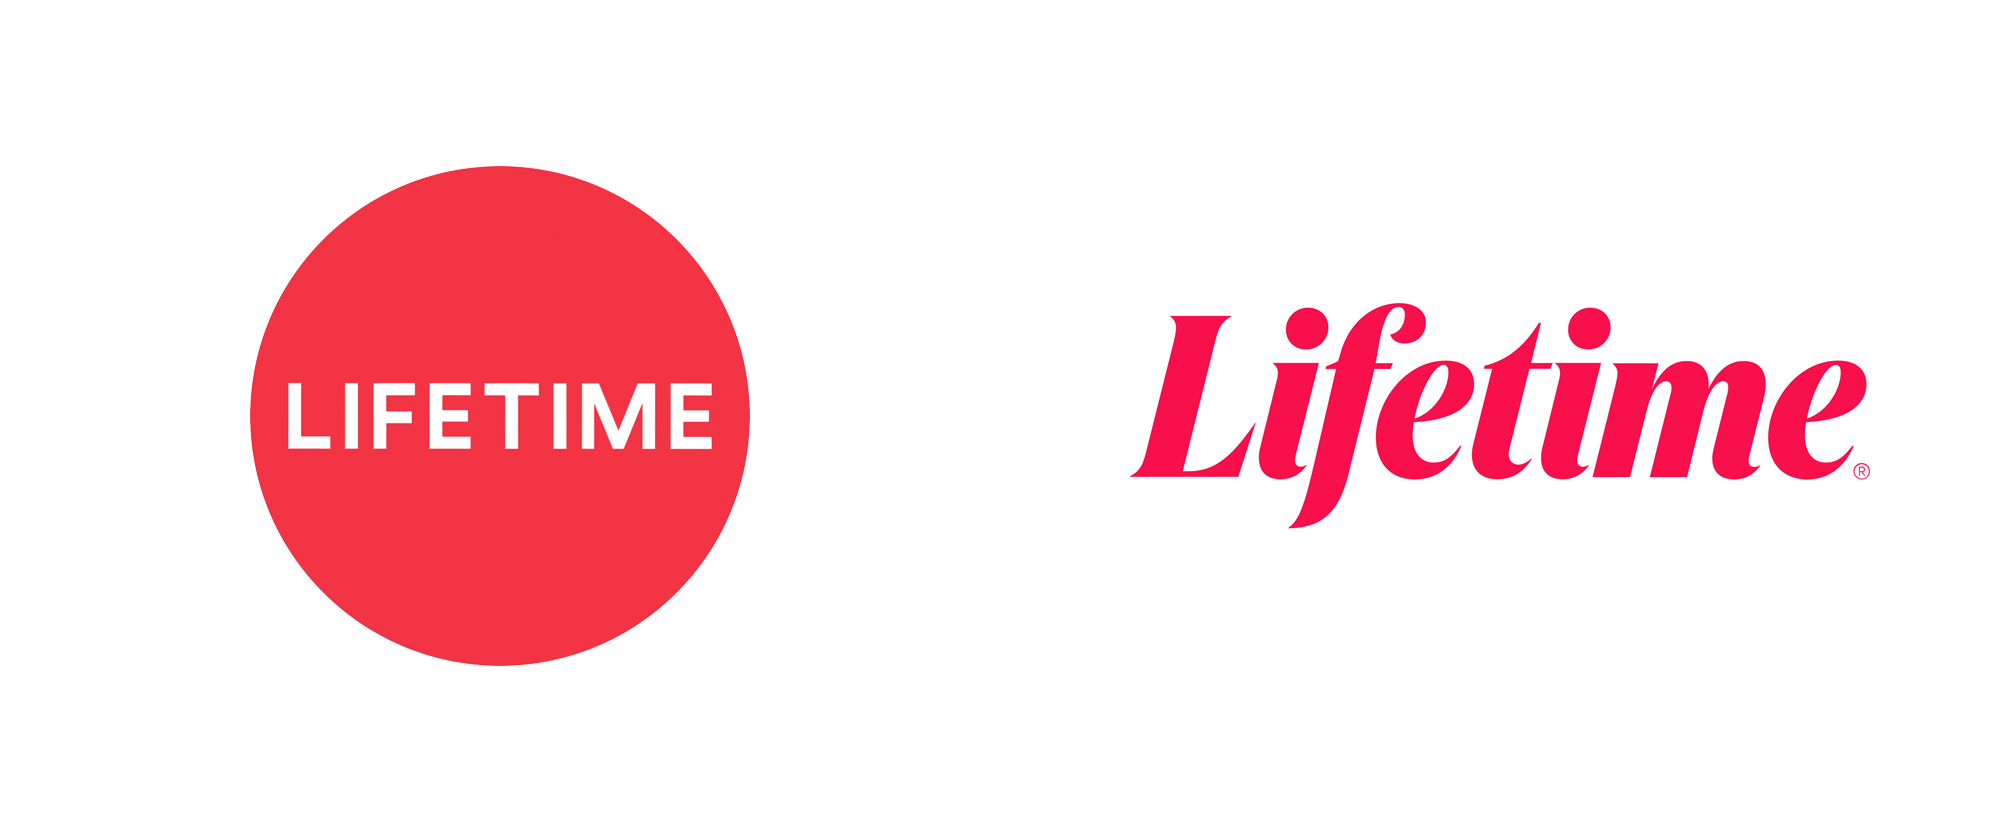 Brand New: New Logo for Lifetime